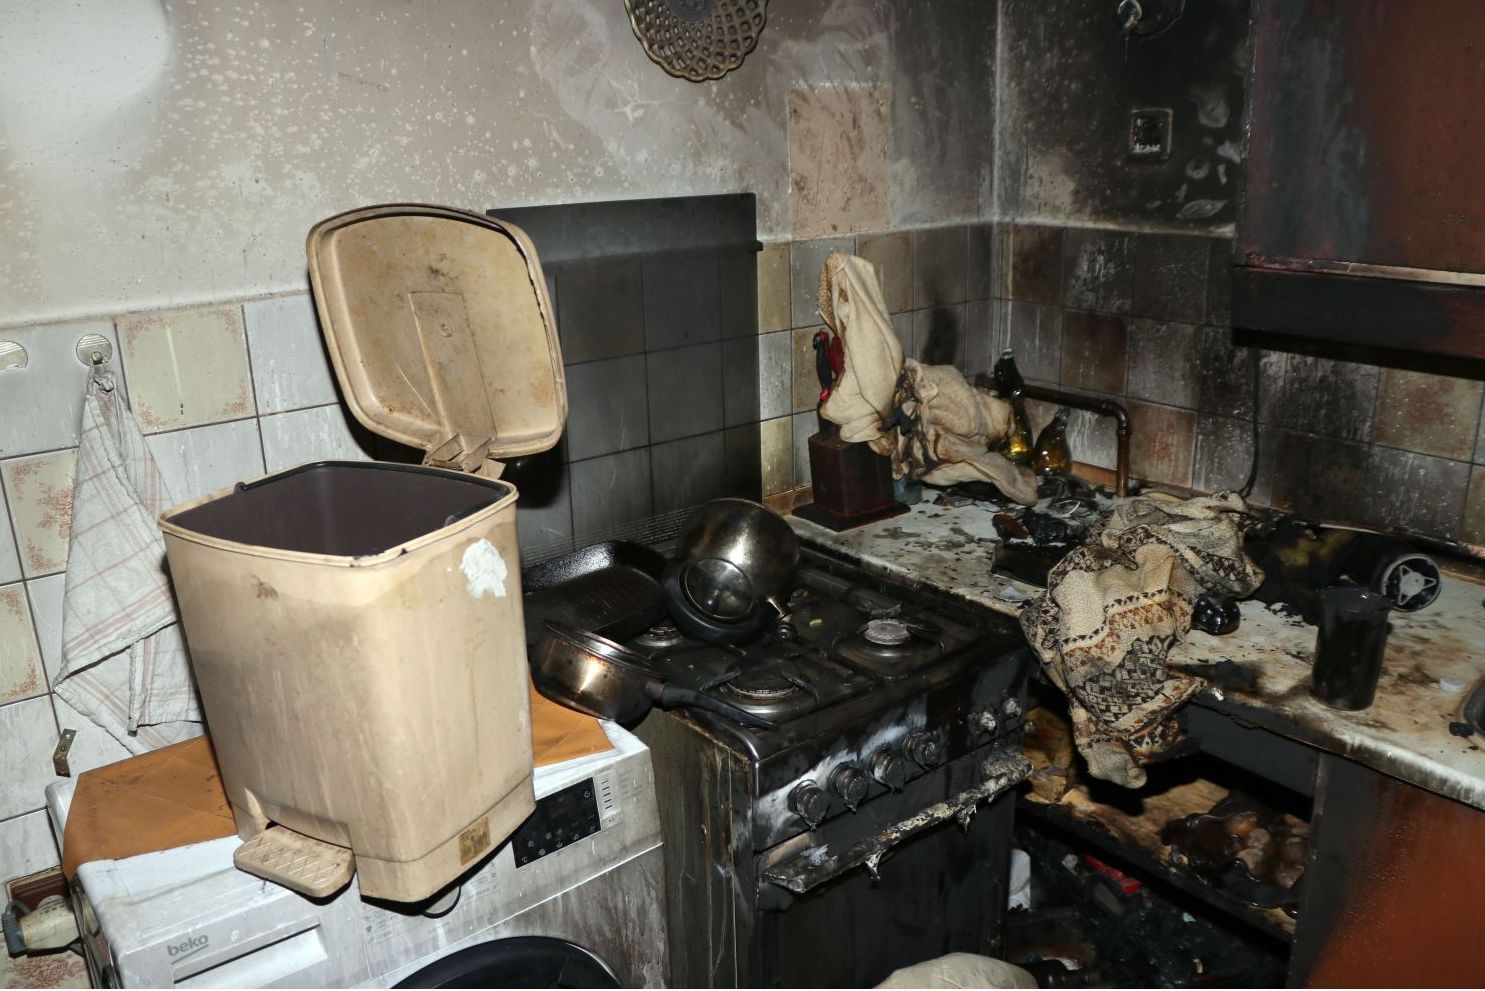 Kuchyň po požáru 2.jpg